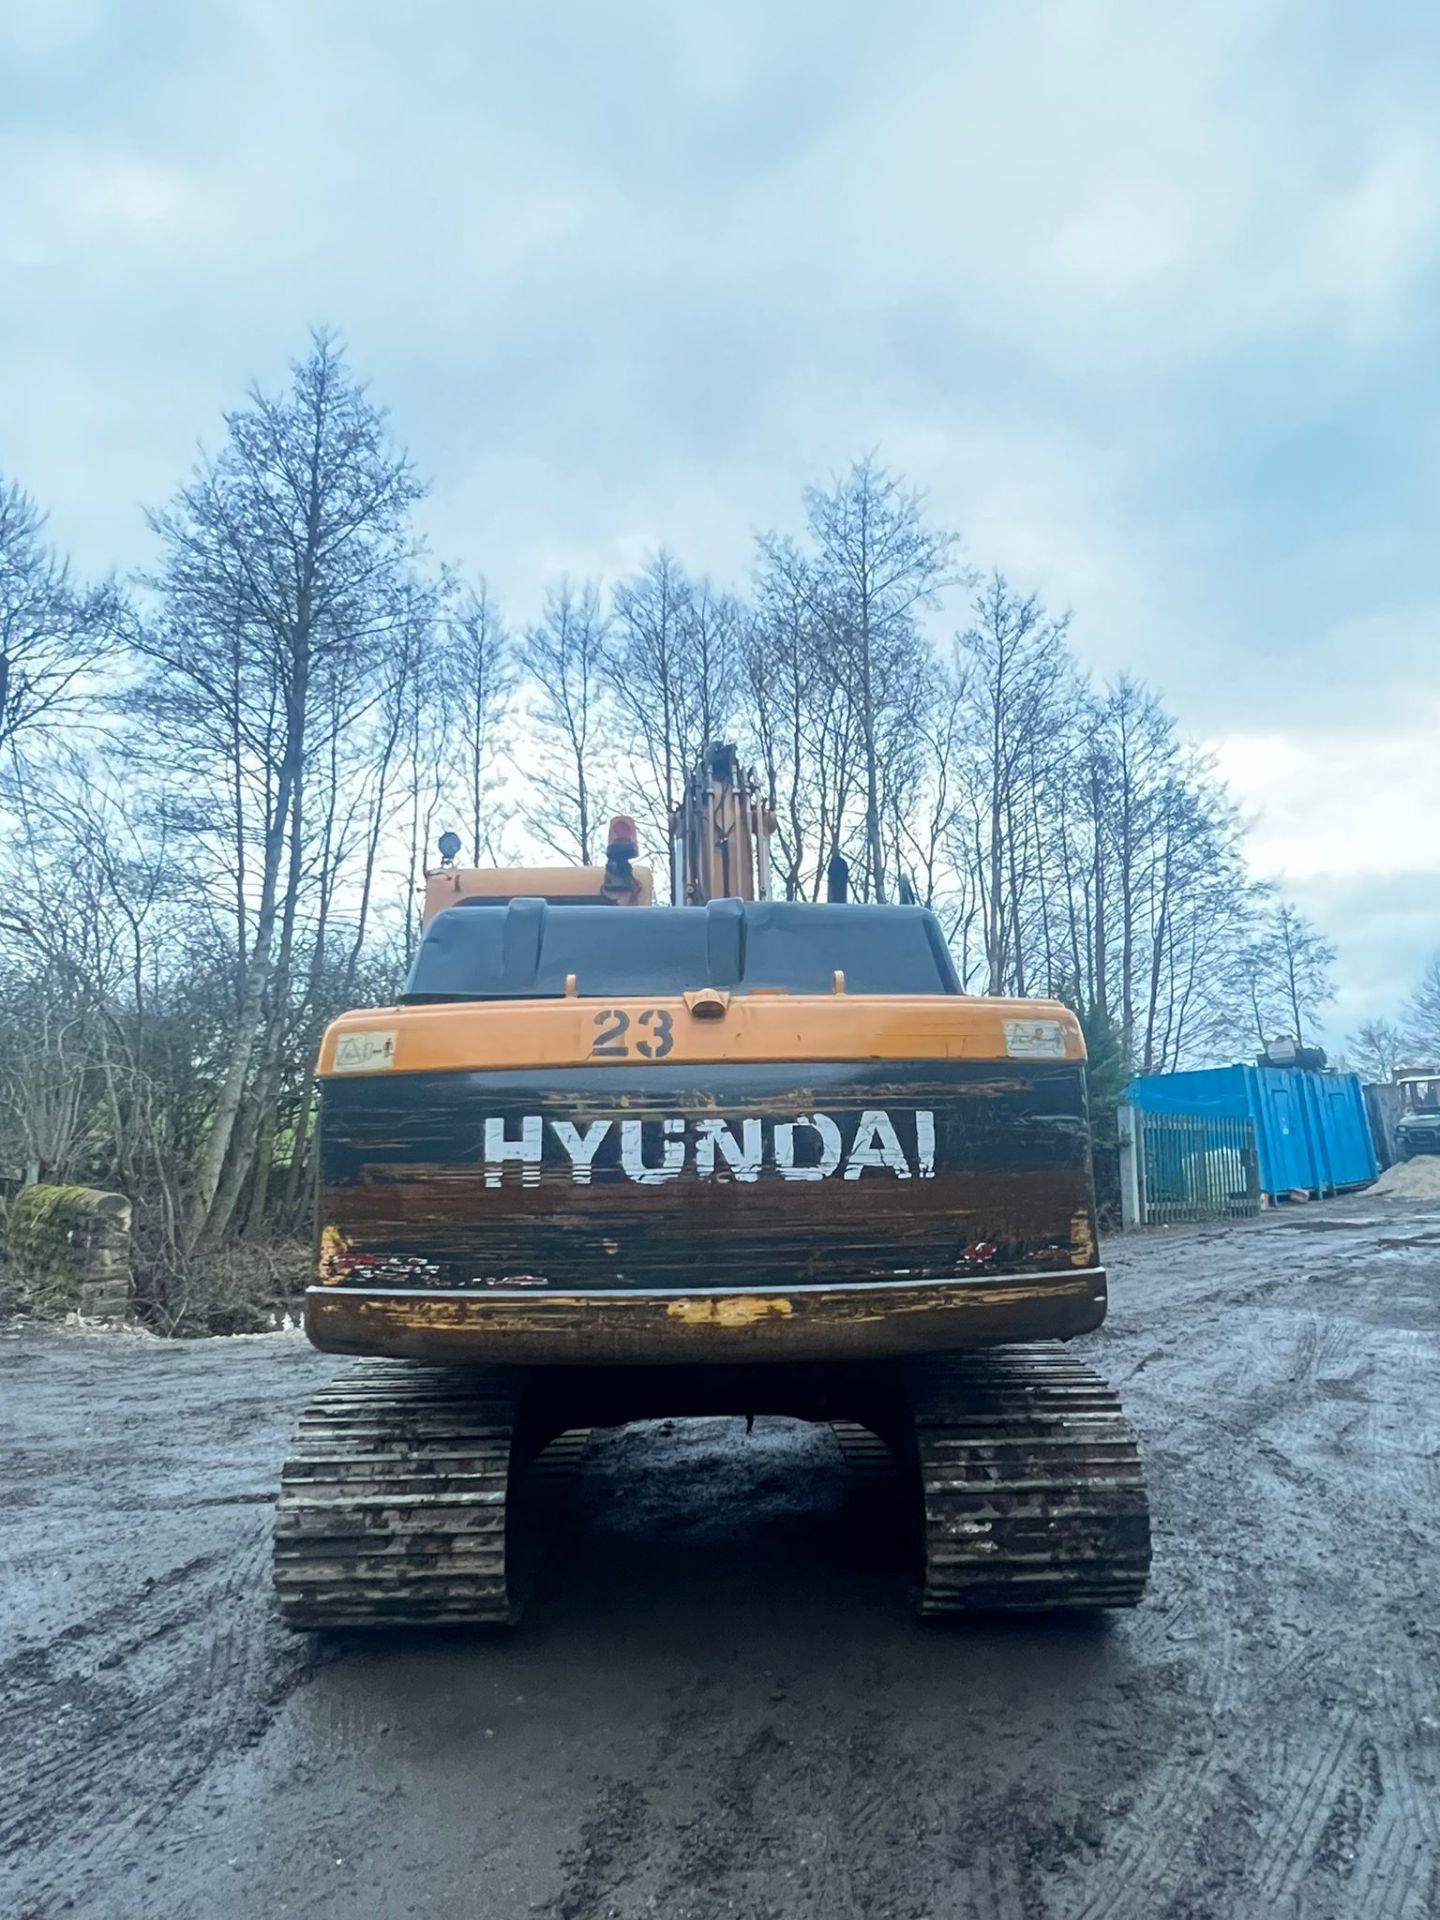 2014 Hyundai Robex 140LC-9A 14 Tonne Excavator *PLUS VAT* - Image 4 of 9